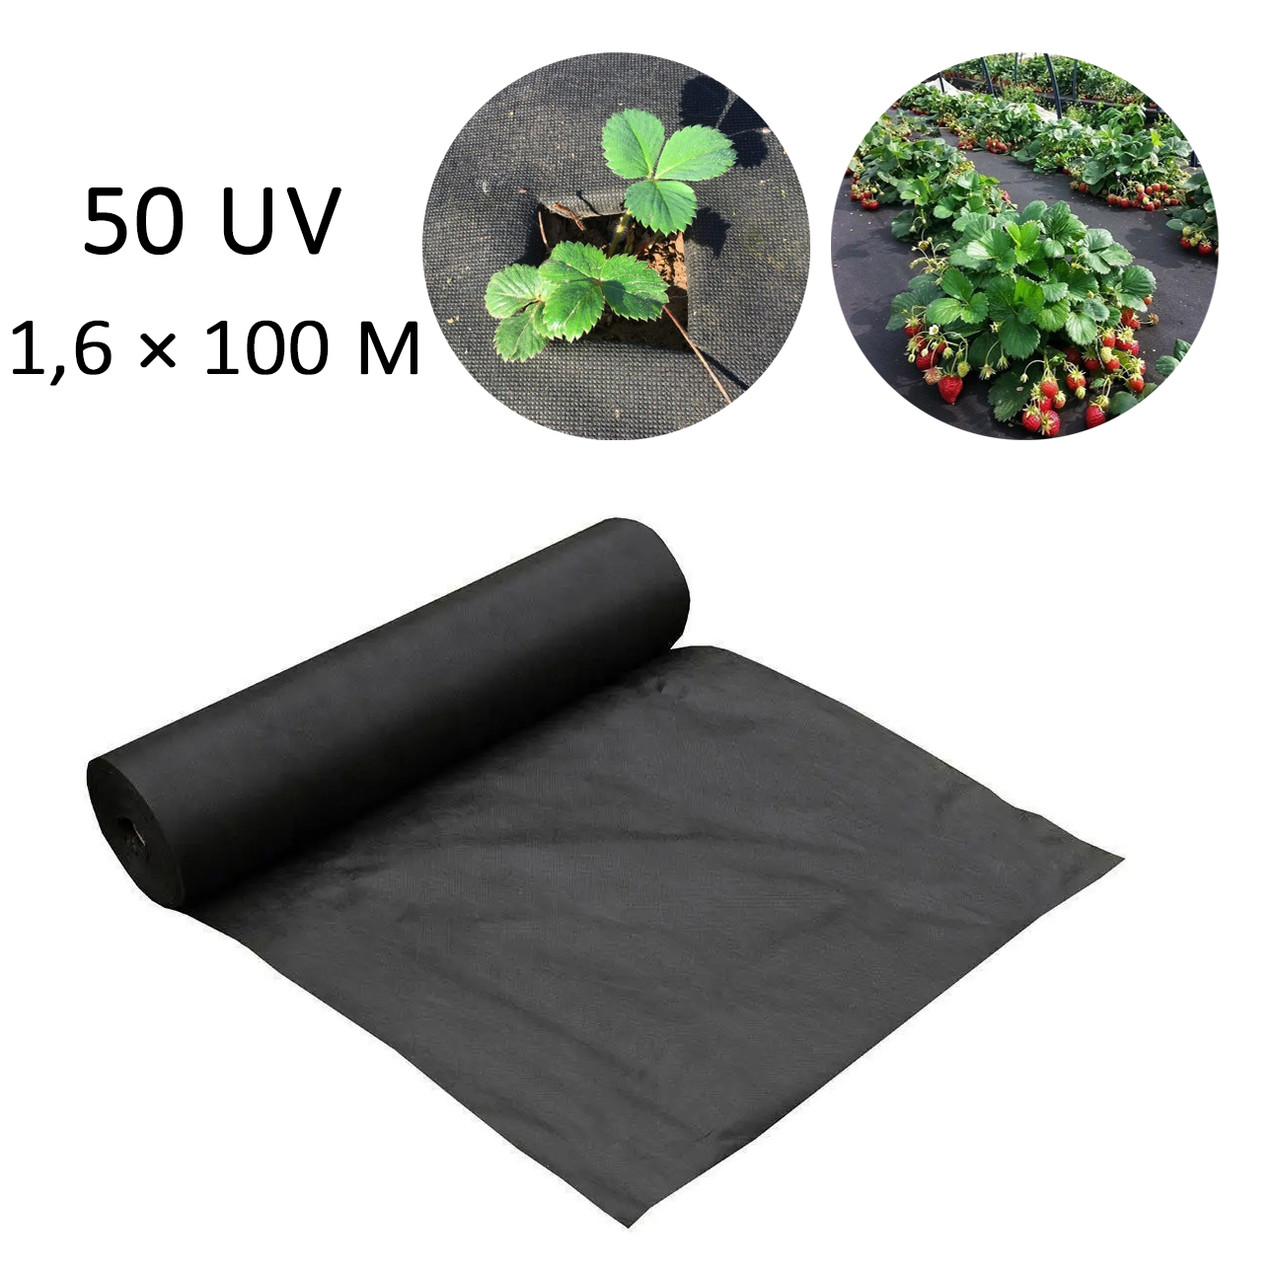 Агроволокно для полуниці Чорне 50 г/м2 (50 UV) 1,6×100 м, спанбонд для мульчування | спанбонд для мульчирования